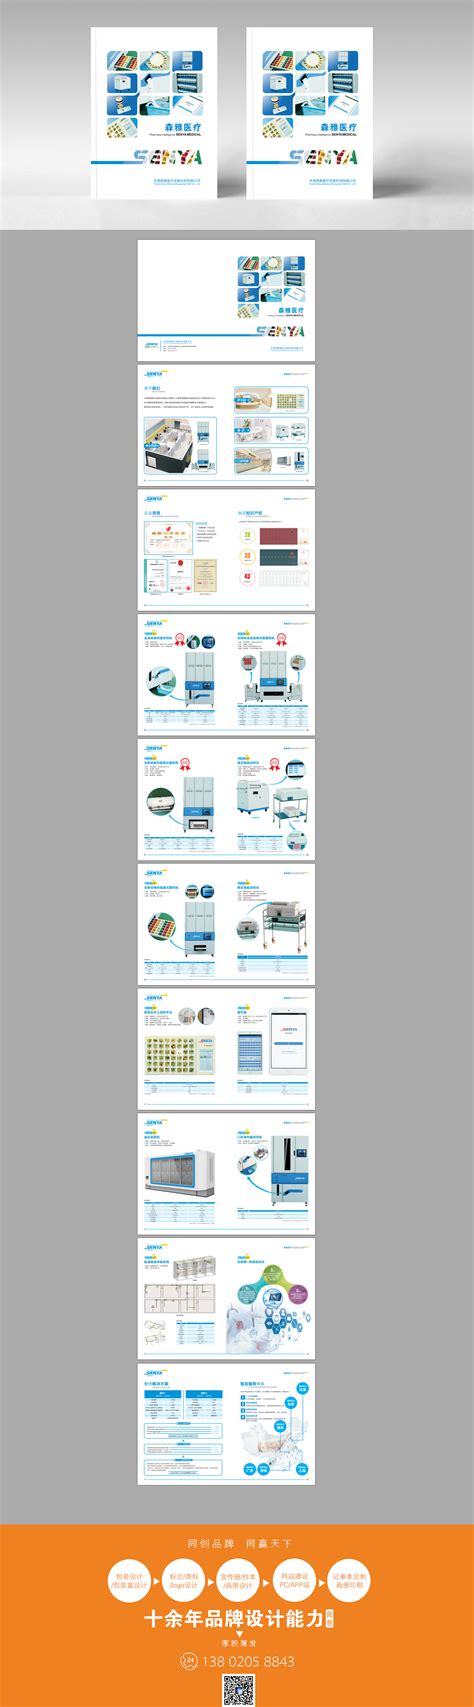 蓝色简洁的物流公司网站设计psd模板_墨鱼部落格